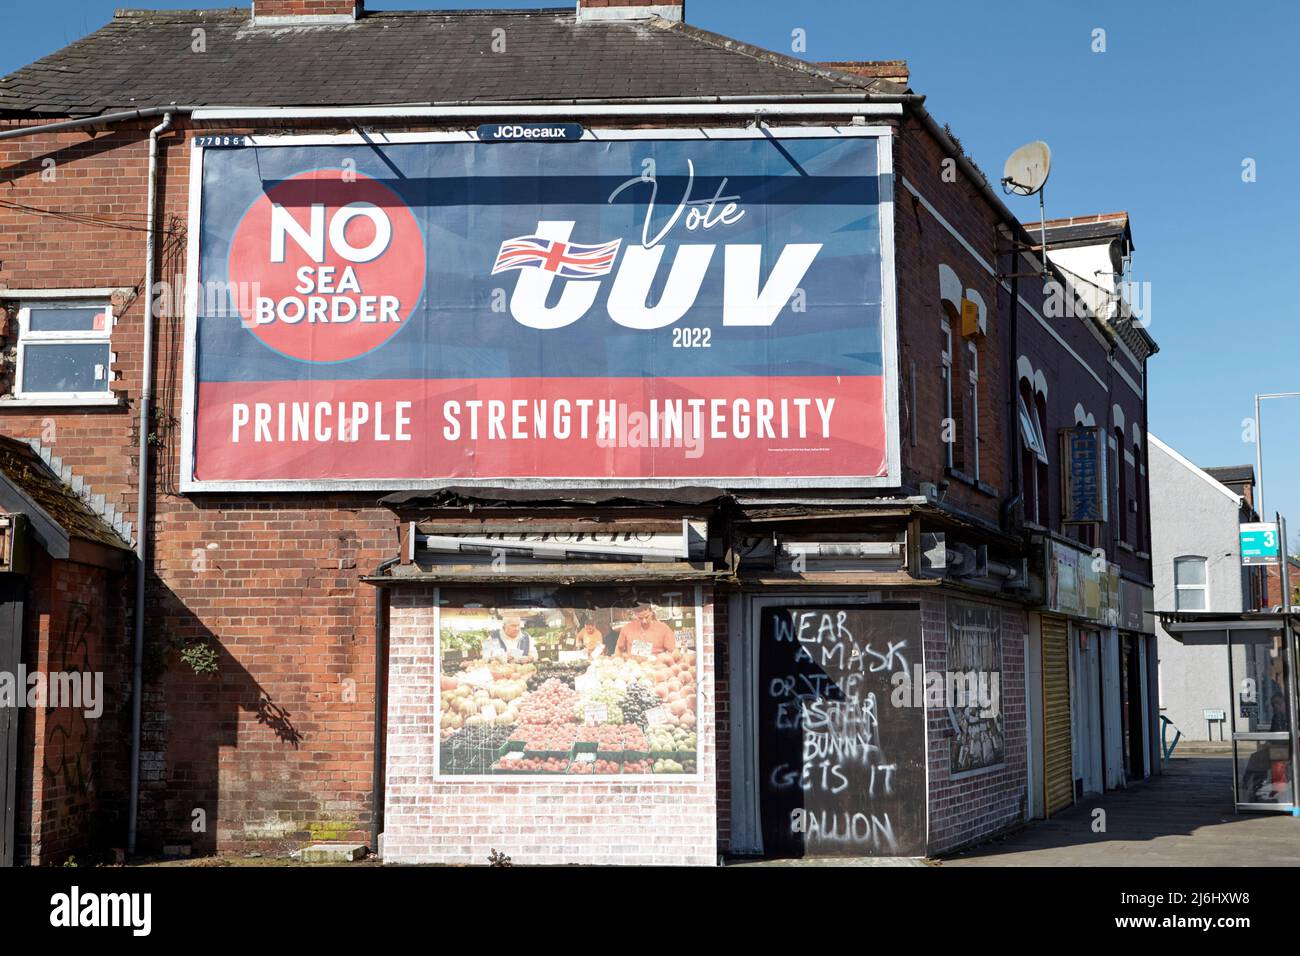 TUV (Traditional Unionist Voice) partito politico elezione pubblicità cartellone con slogan 'No SEA Border' sulla bassa newtownards strada in avvicinamento Foto Stock